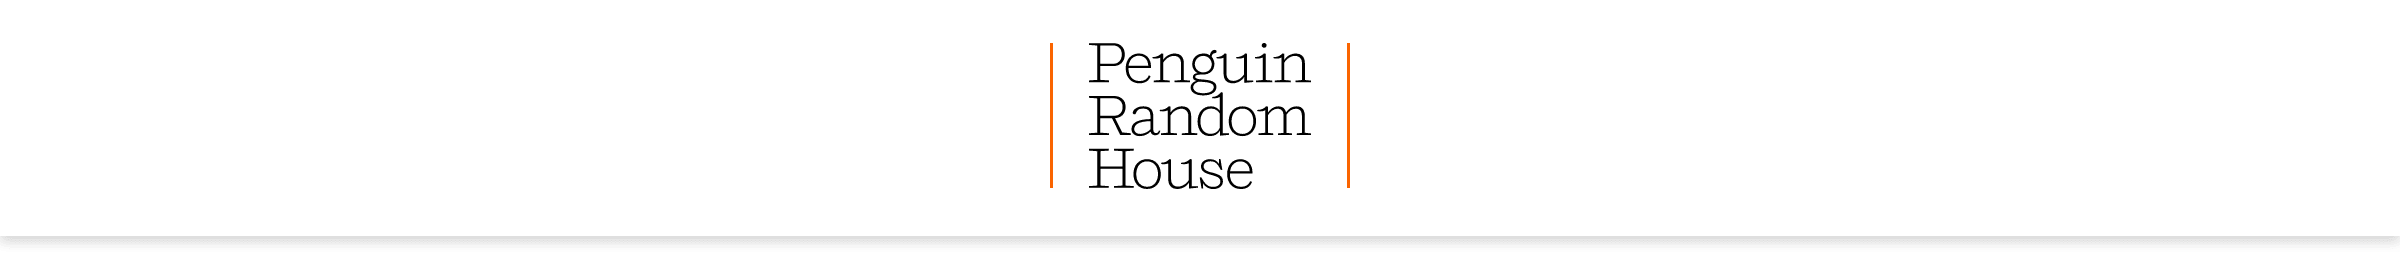 Penguin Random House Logo on white bar